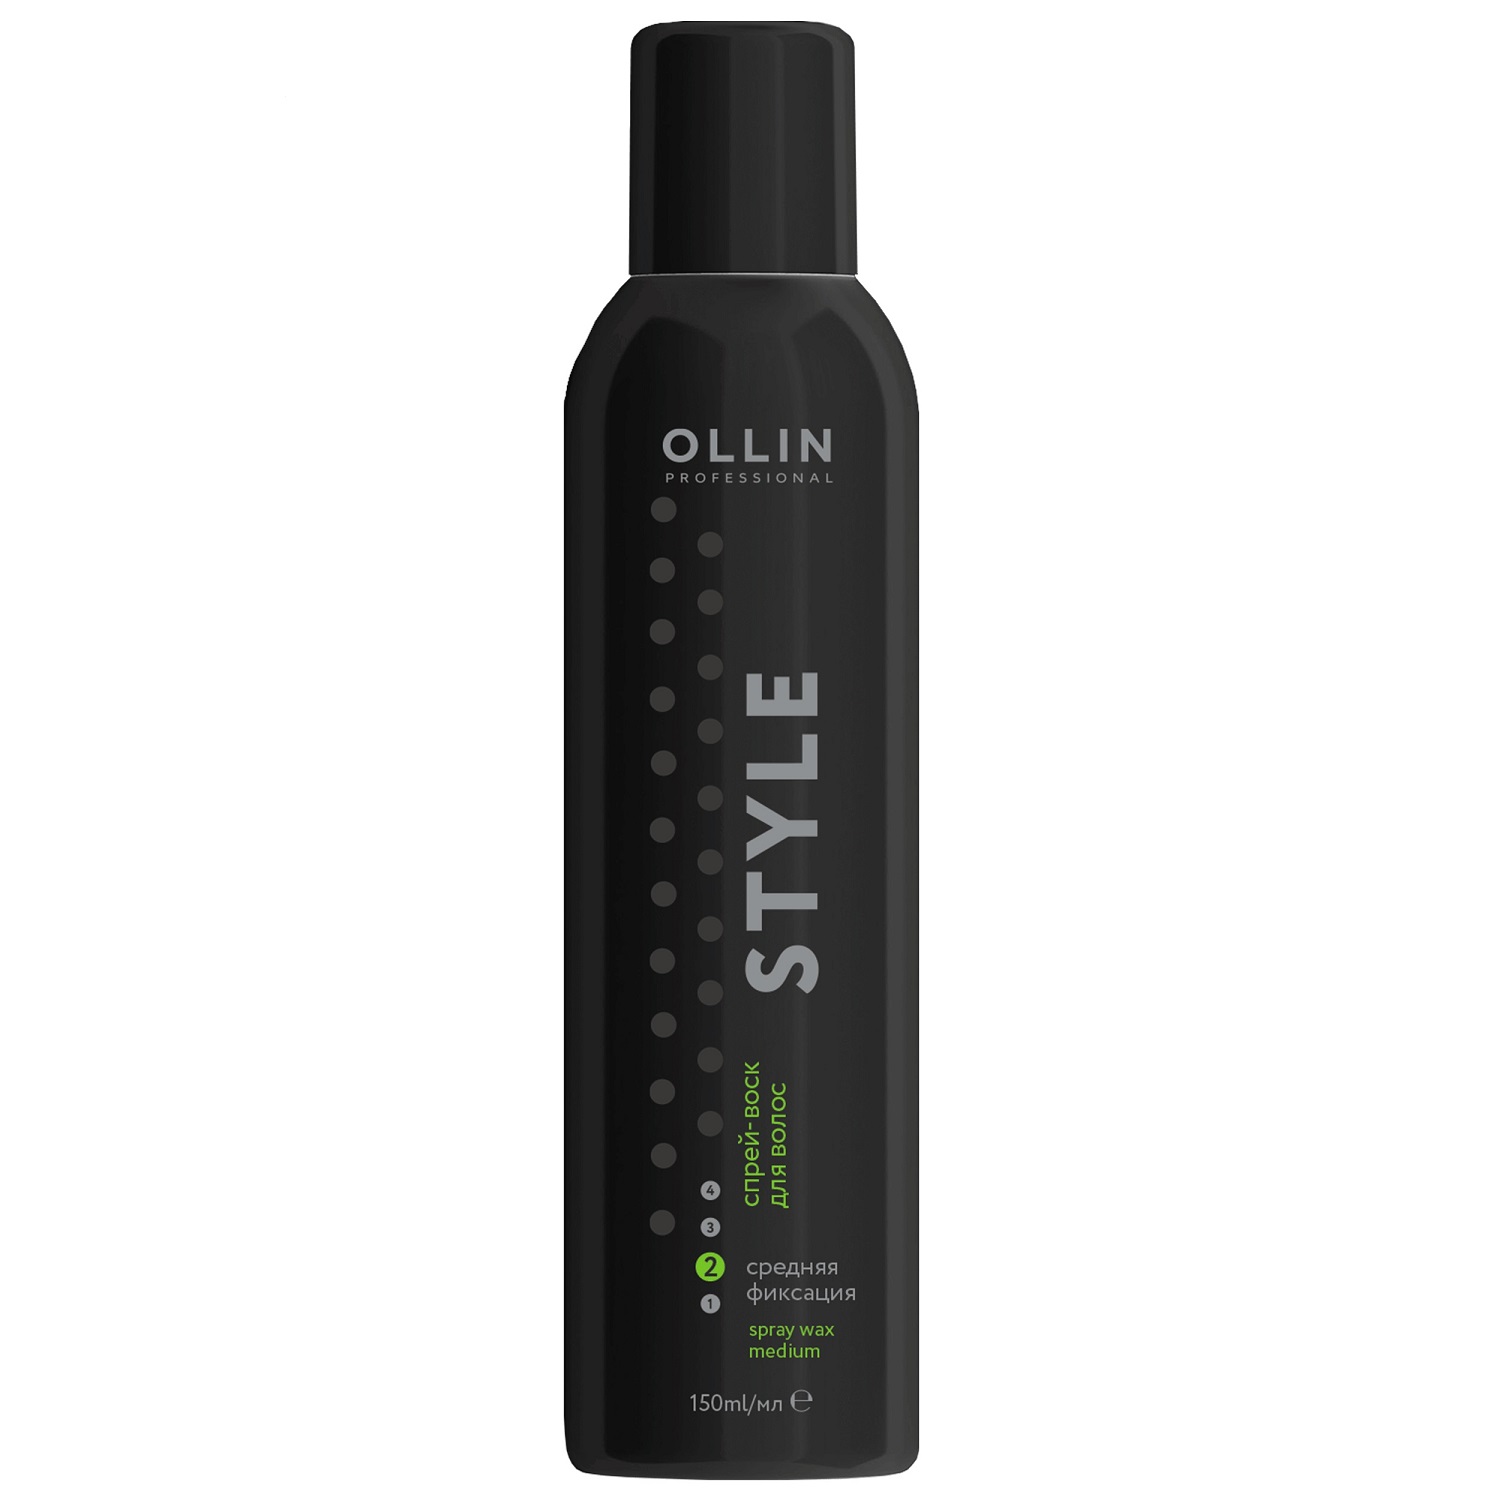 Спрей-воск для волос Ollin Professional средней фиксации 150мл, спрей  - Купить